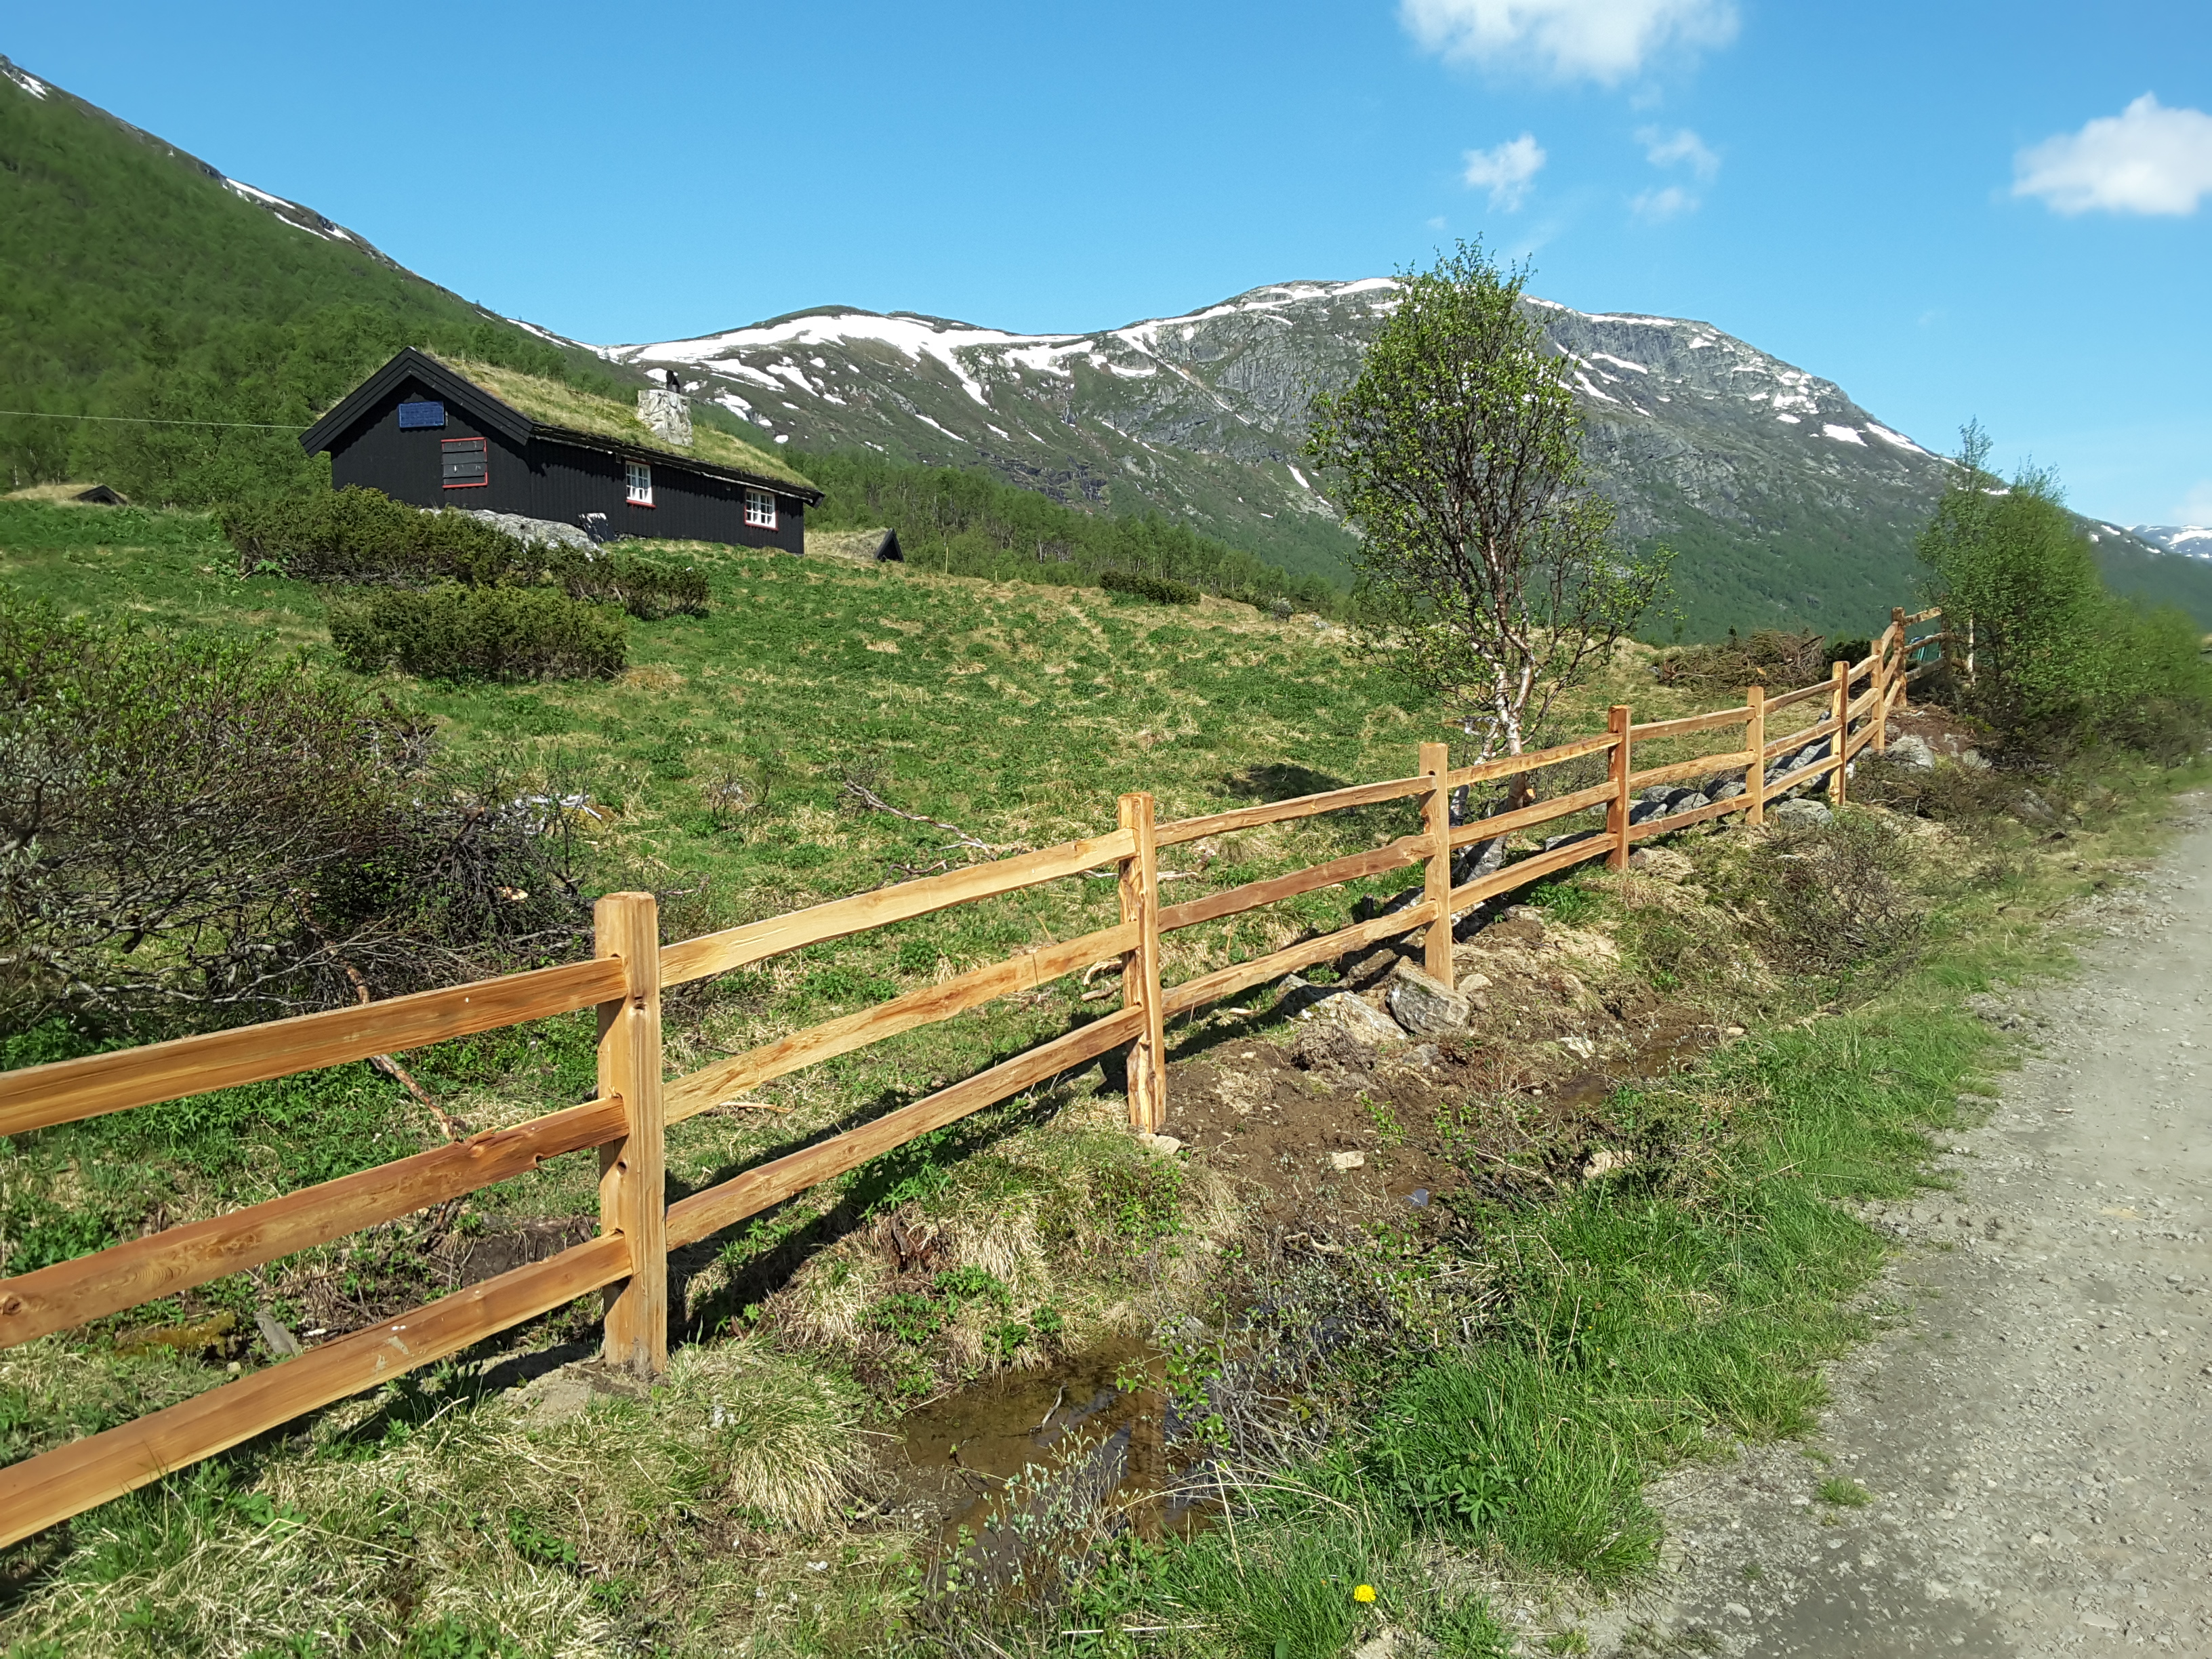 Ein rustikaler Lattenzaun aus Zedernholz begrenzt ein Naturgrundstück mit einer Hütte in einer Bergregion.